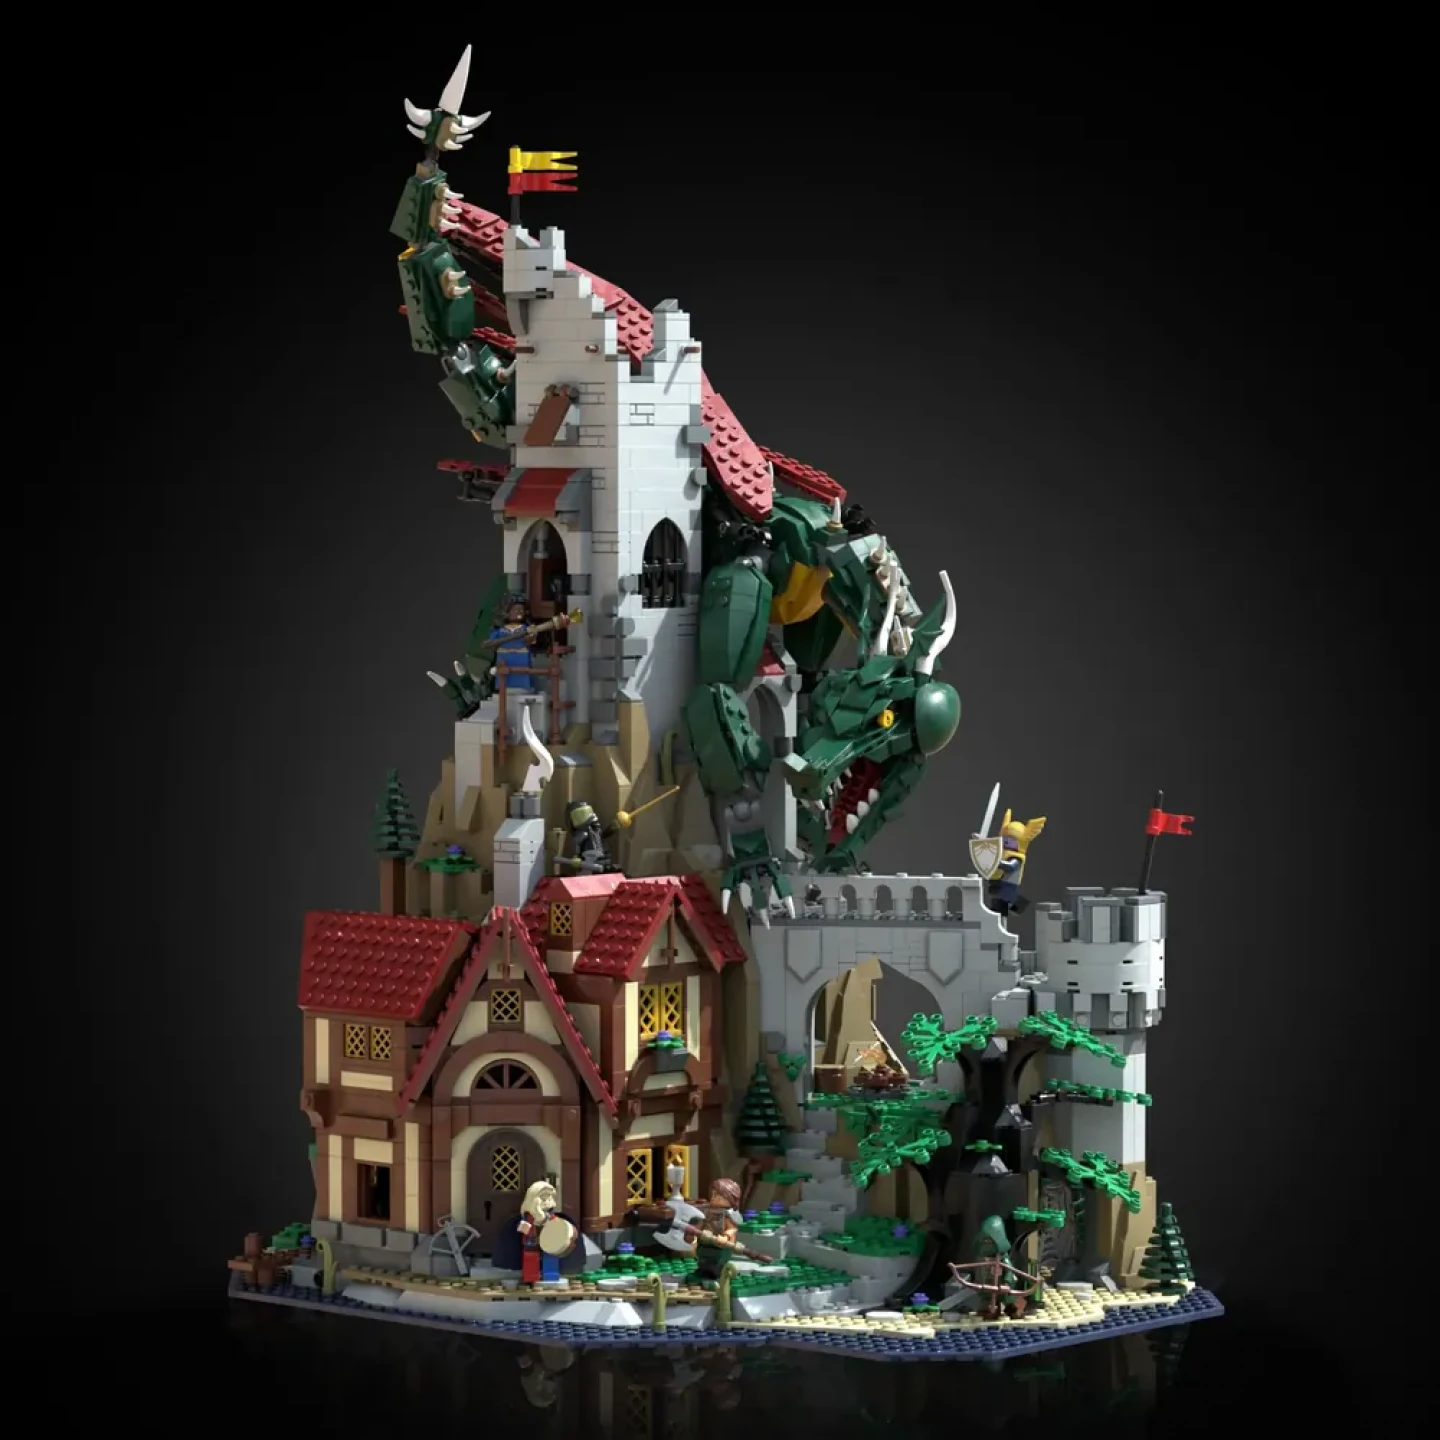 De eerste details van LEGO Dungeons and Dragons set verschijnen online